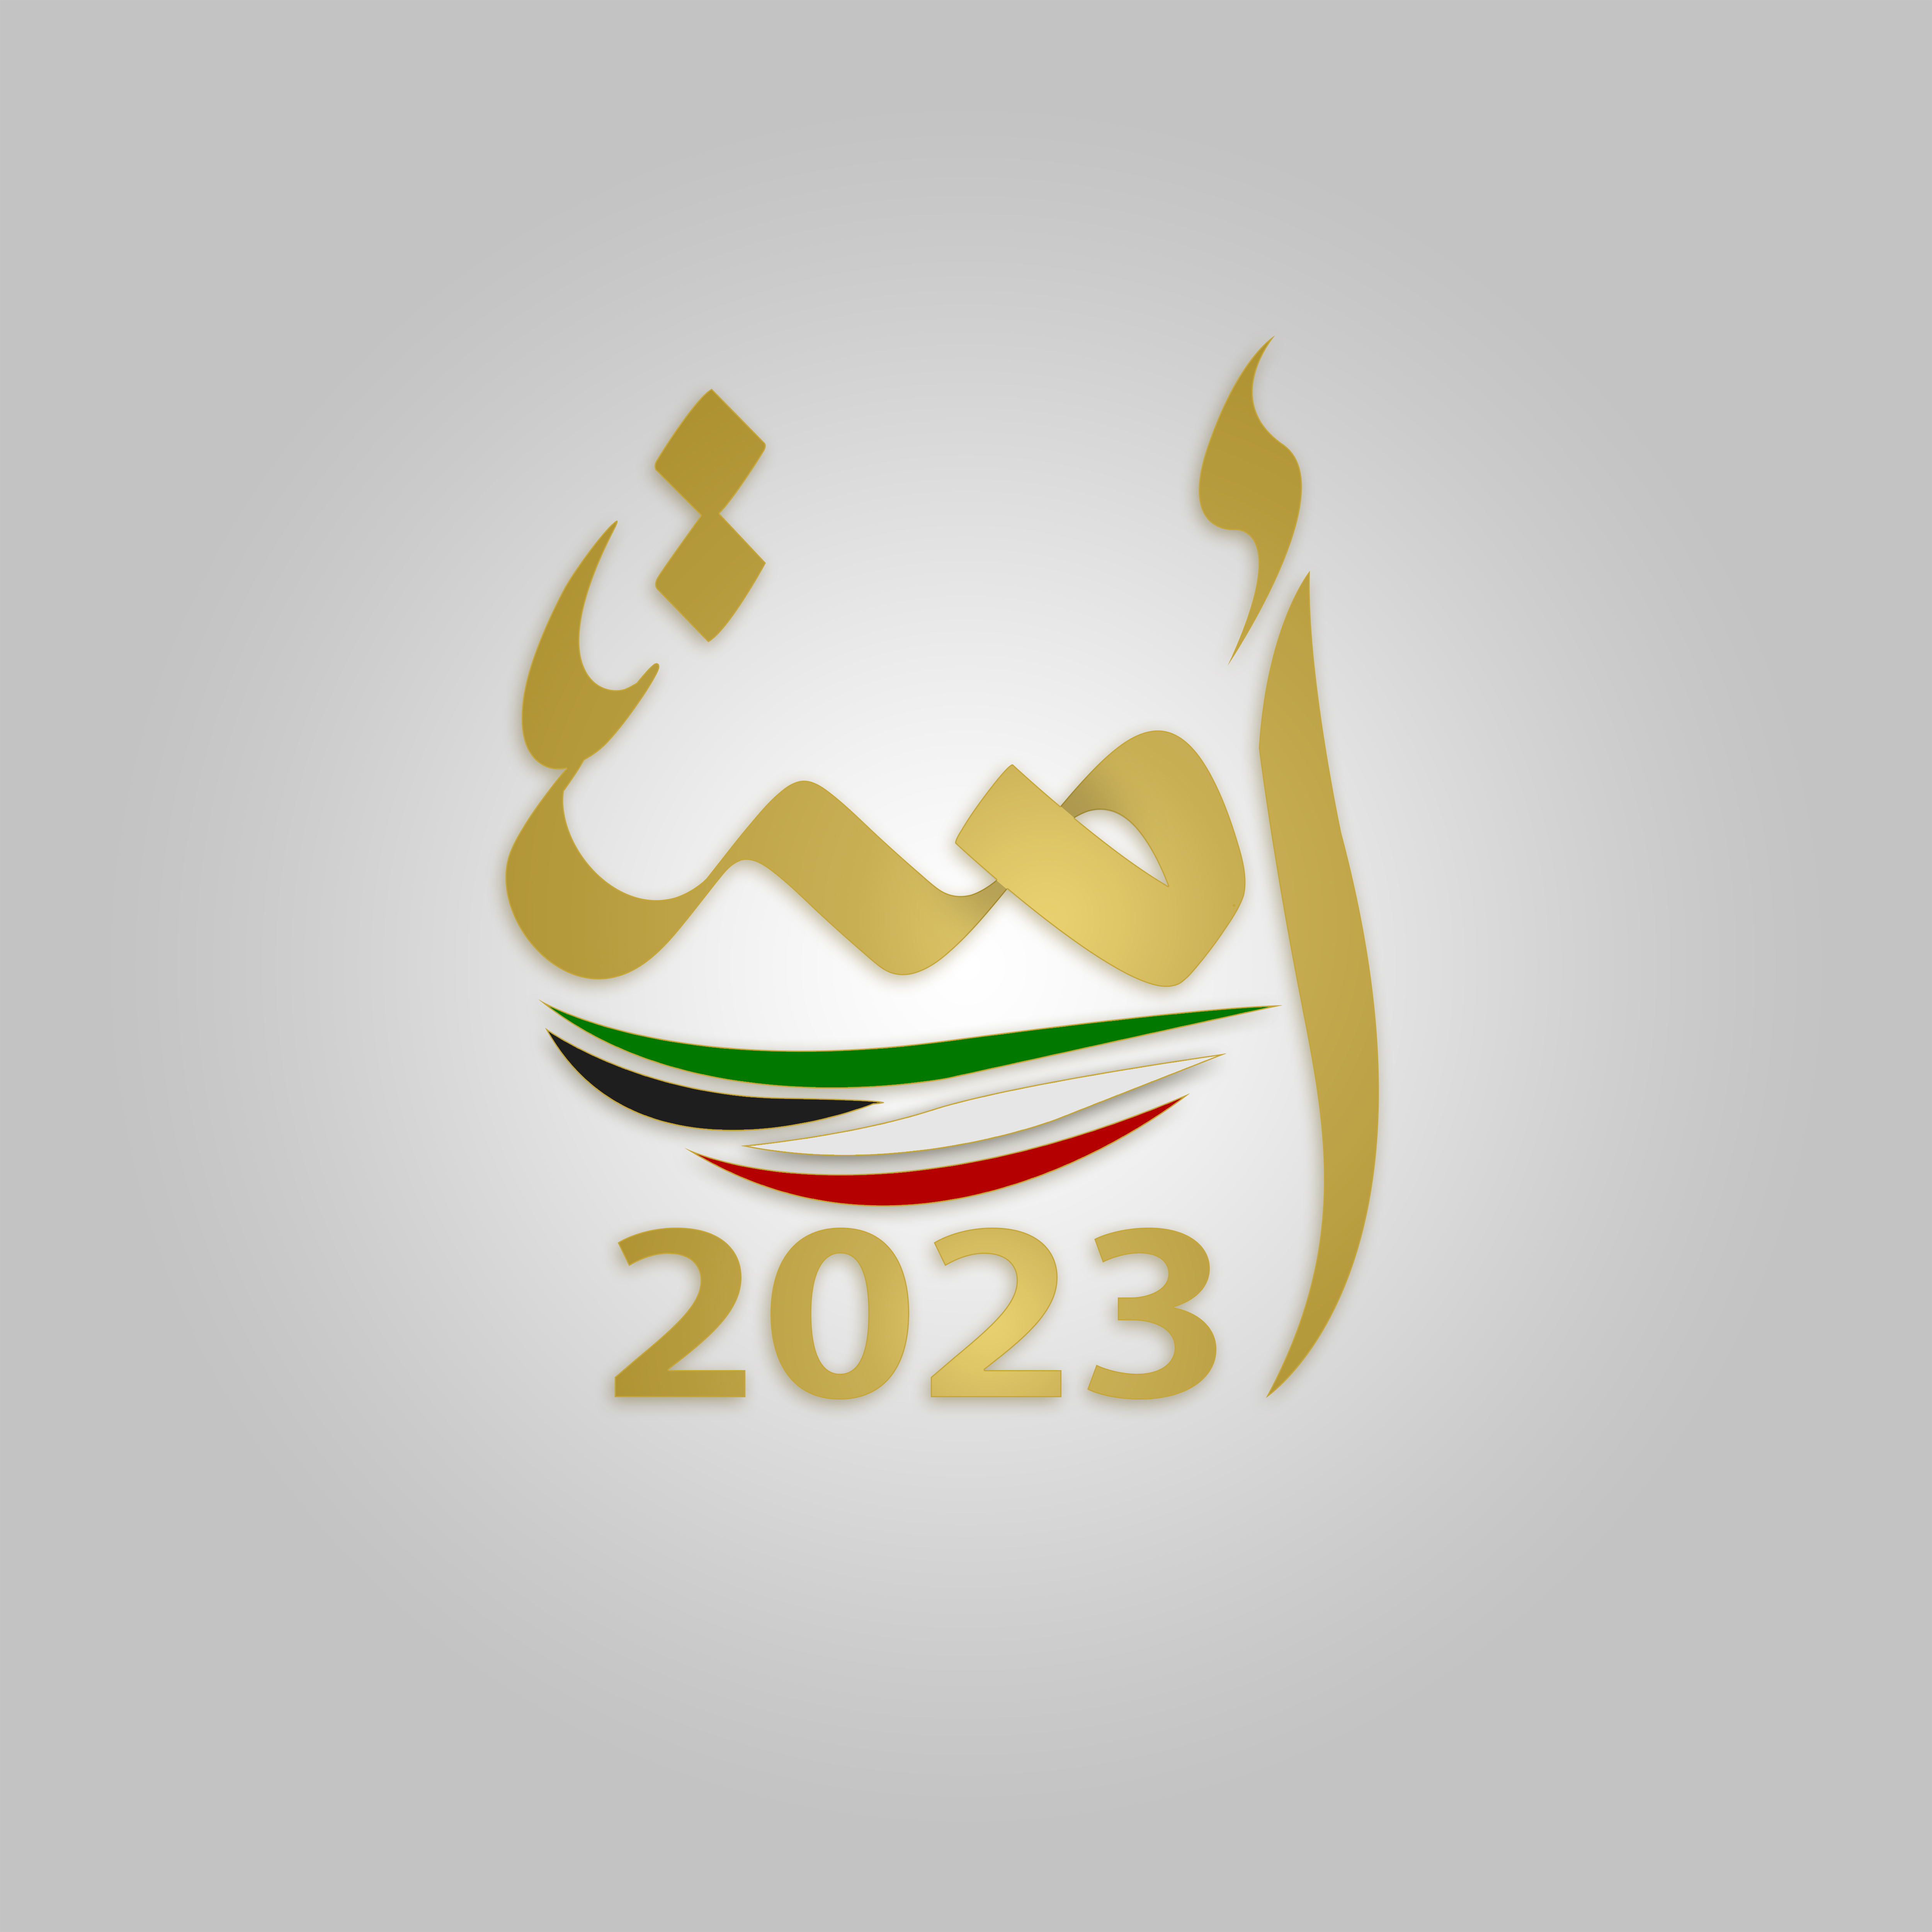 السير الذاتية للفائزين بعضوية مجلس الأمة الكويتي (أمة 2023) عن الدائرة الانتخابية الخامسة